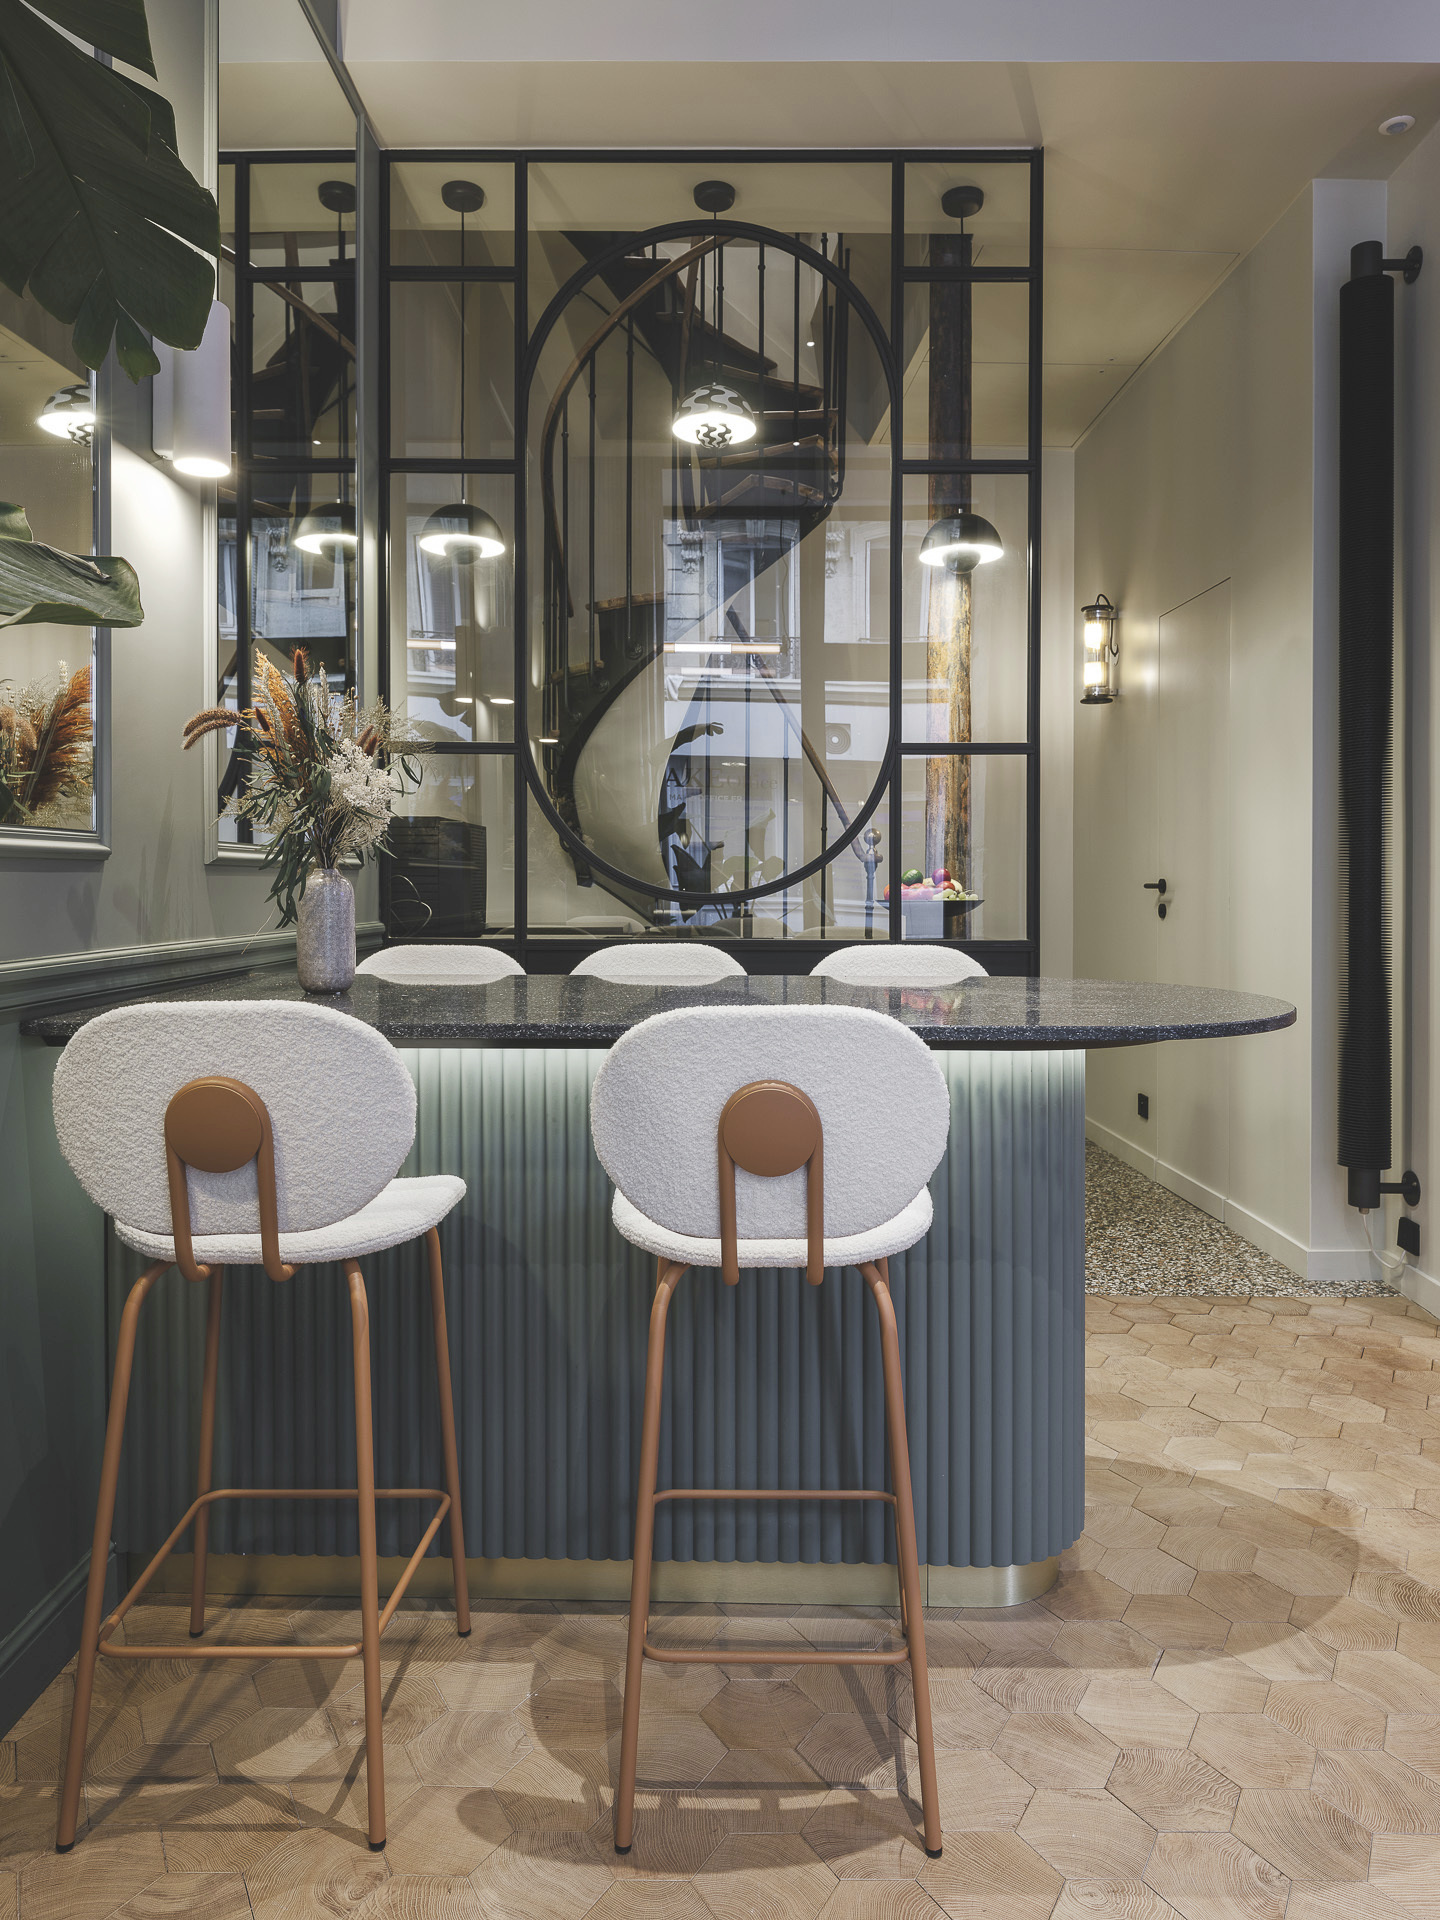 Par un jeu de reflets, grâce aux miroirs et à la finition du plateau de la table du bar, cet espace lumineux sert aussi bien à la collaboration informelle - le temps d'un café ou d'un en-cas - qu'à la réception de clients.